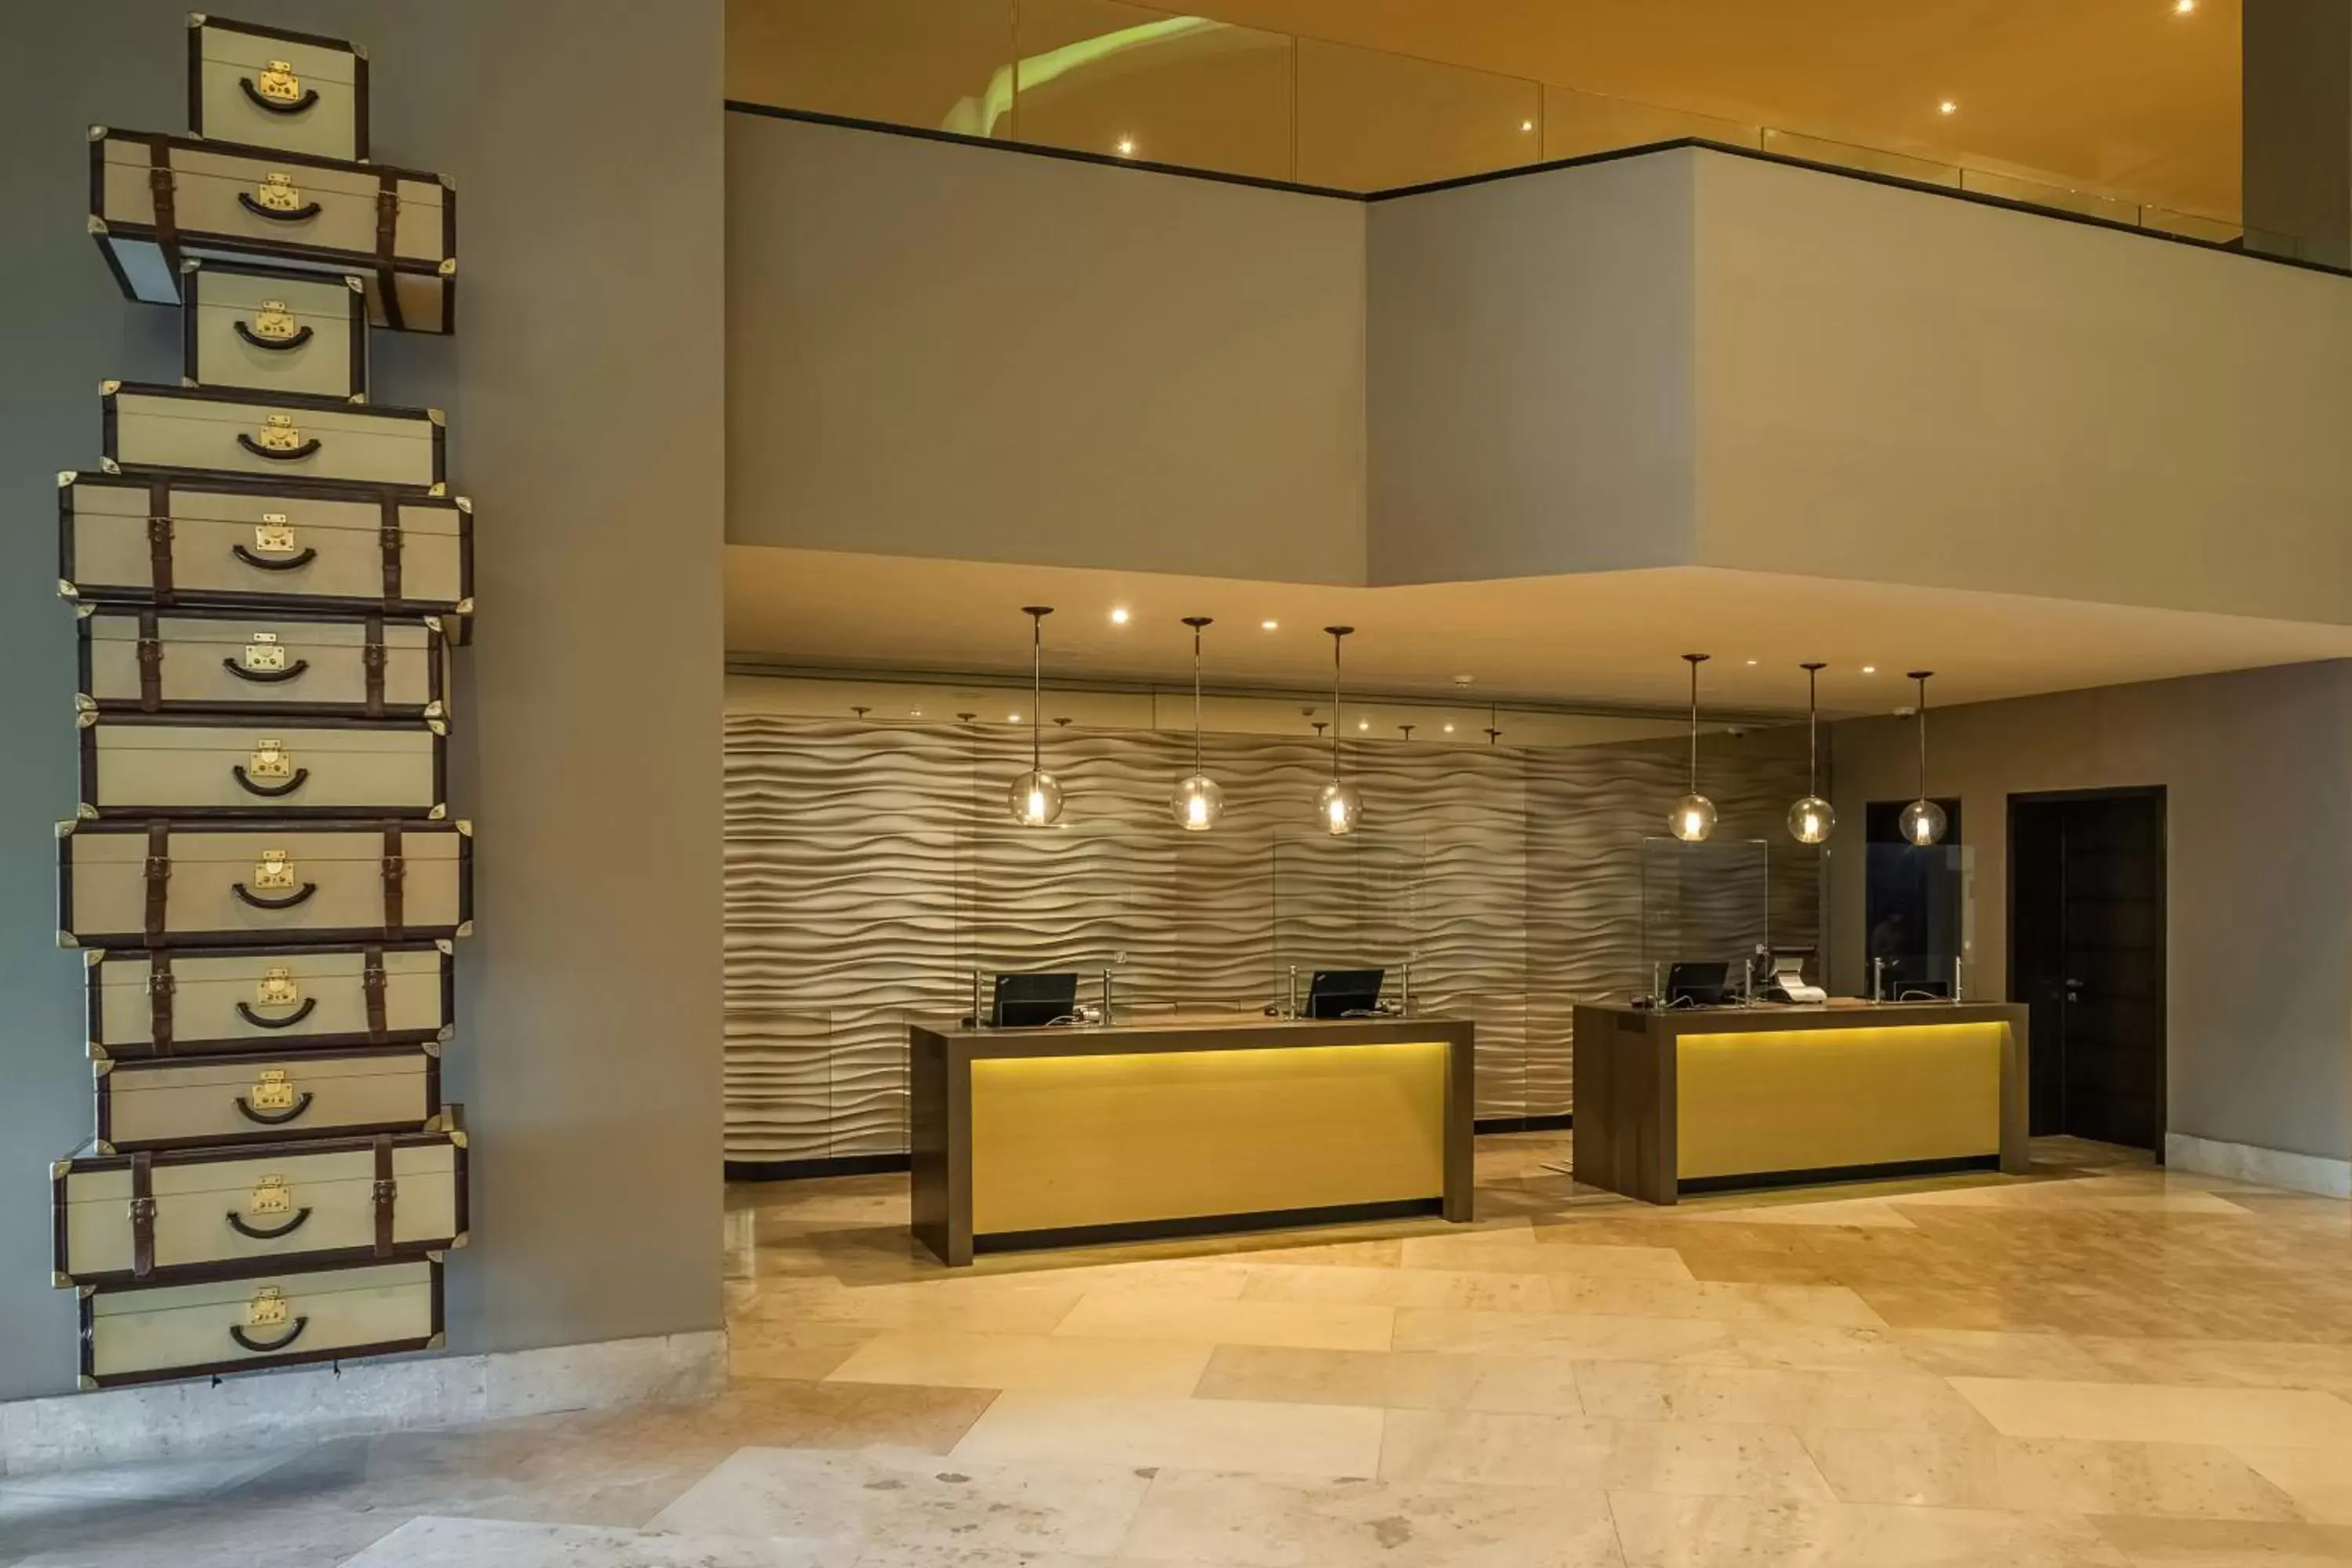 Lobby or reception, Lobby/Reception in Hyatt Regency Merida